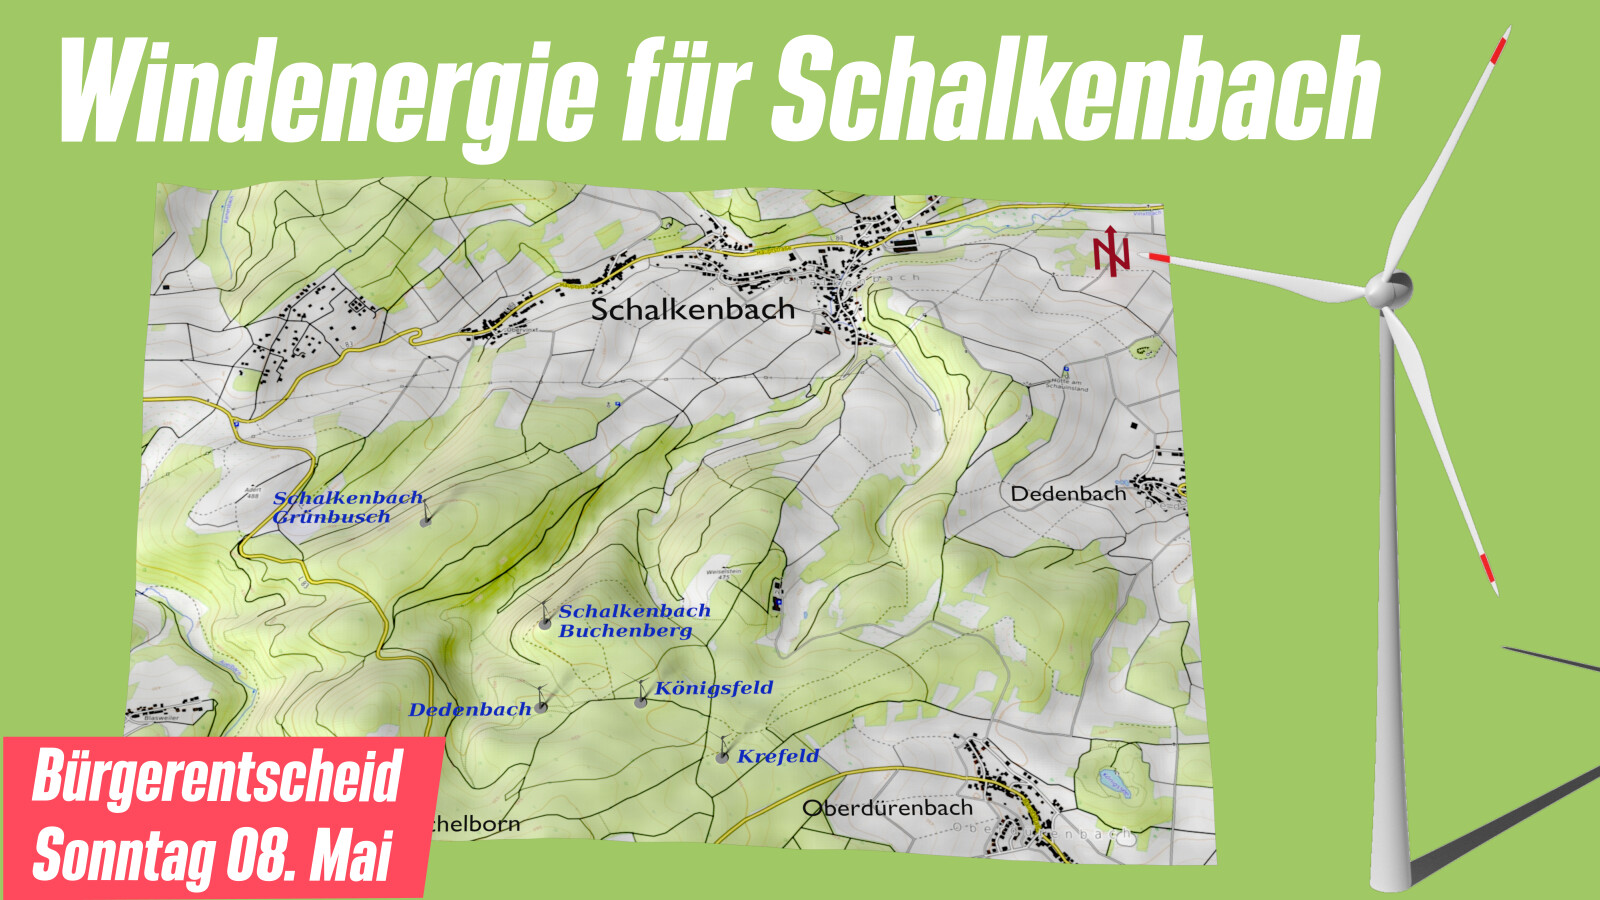 Windenergie für Schalkenbach